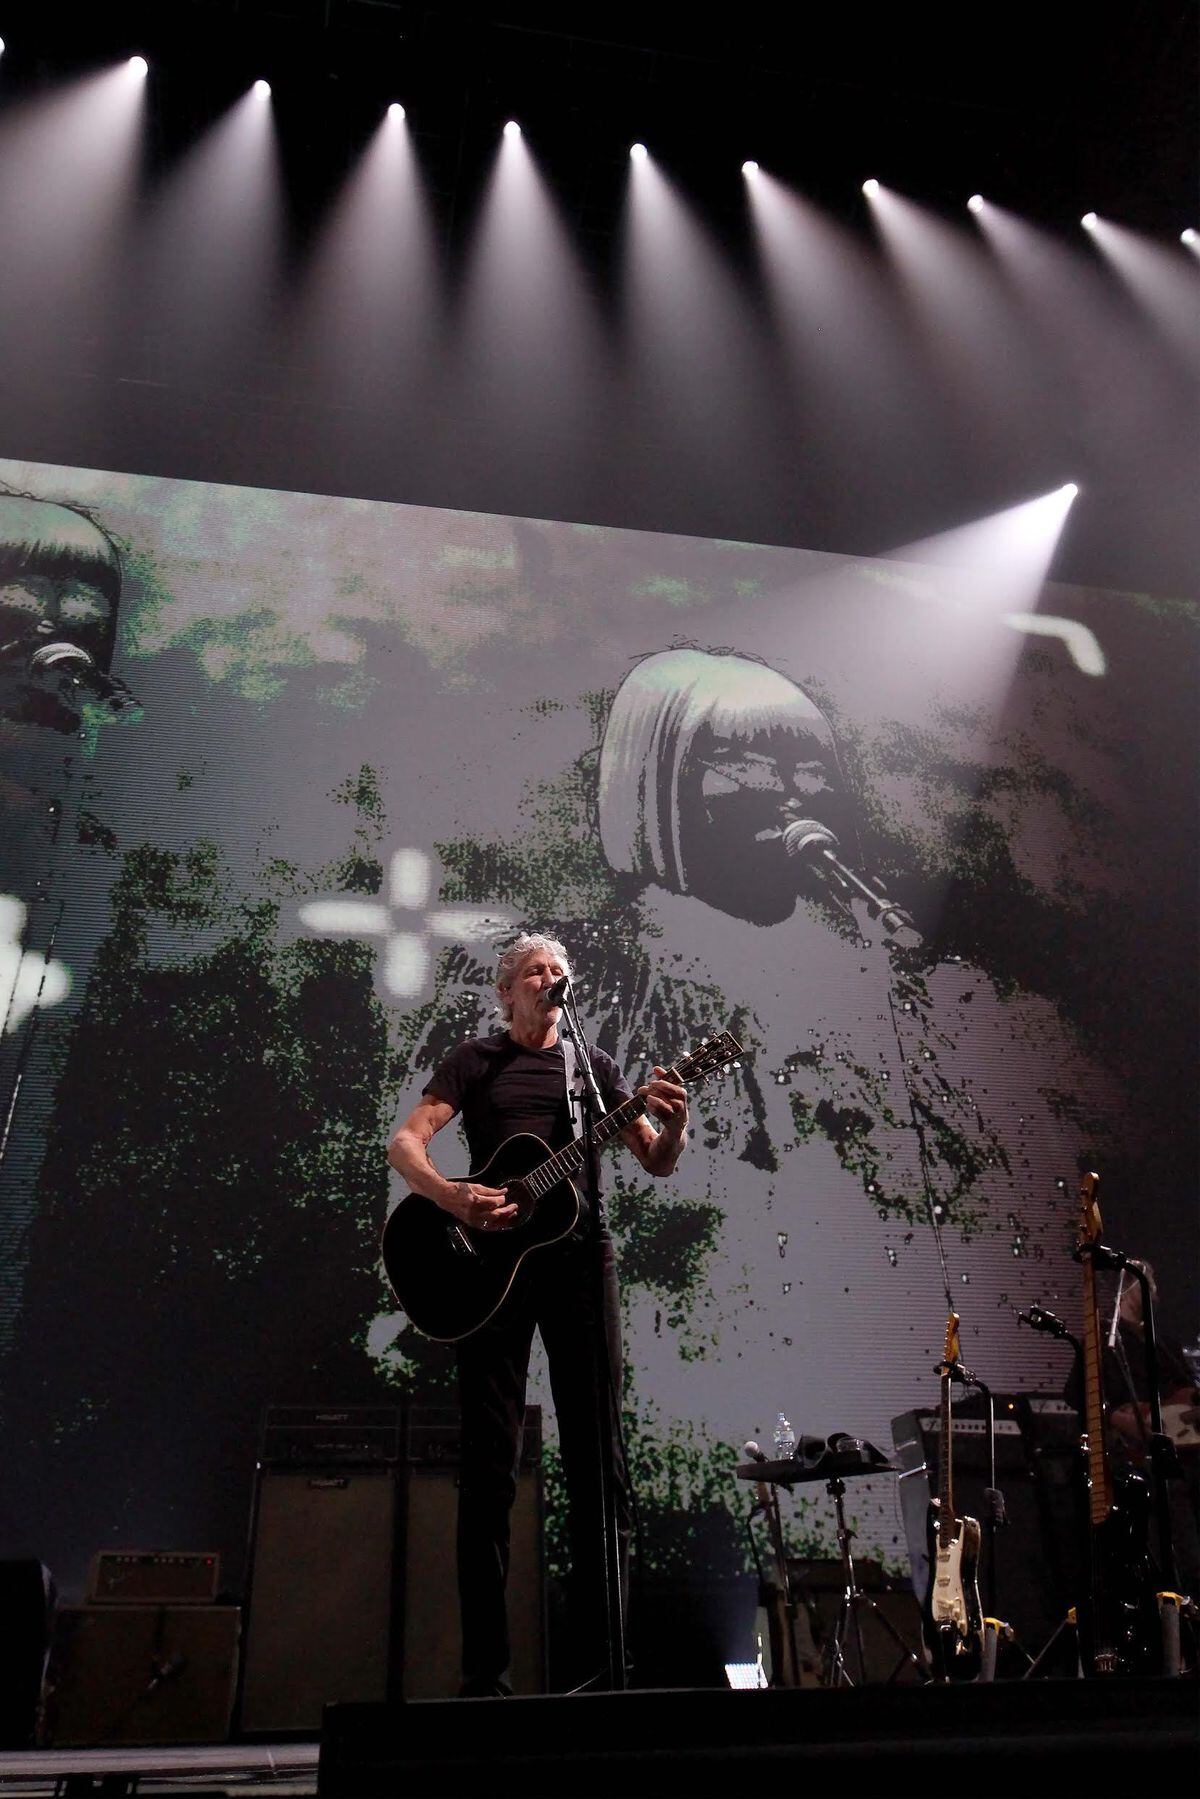 Roger Waters at Birmingham Arena